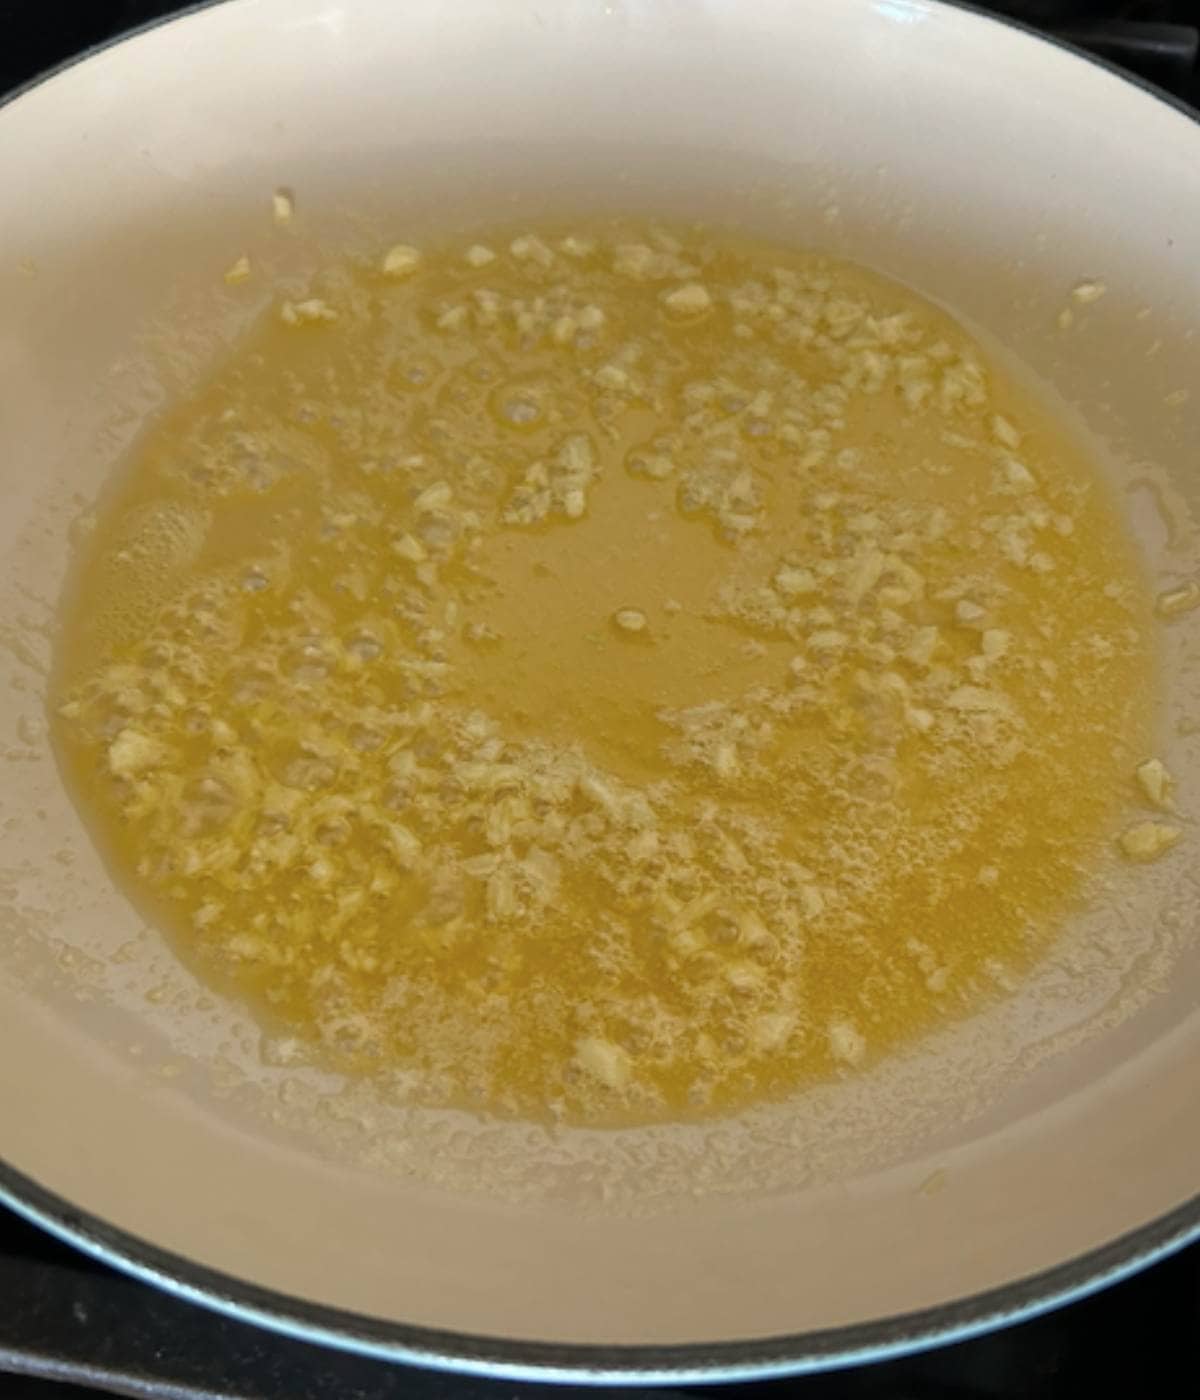 Garlic butter melting in pan.